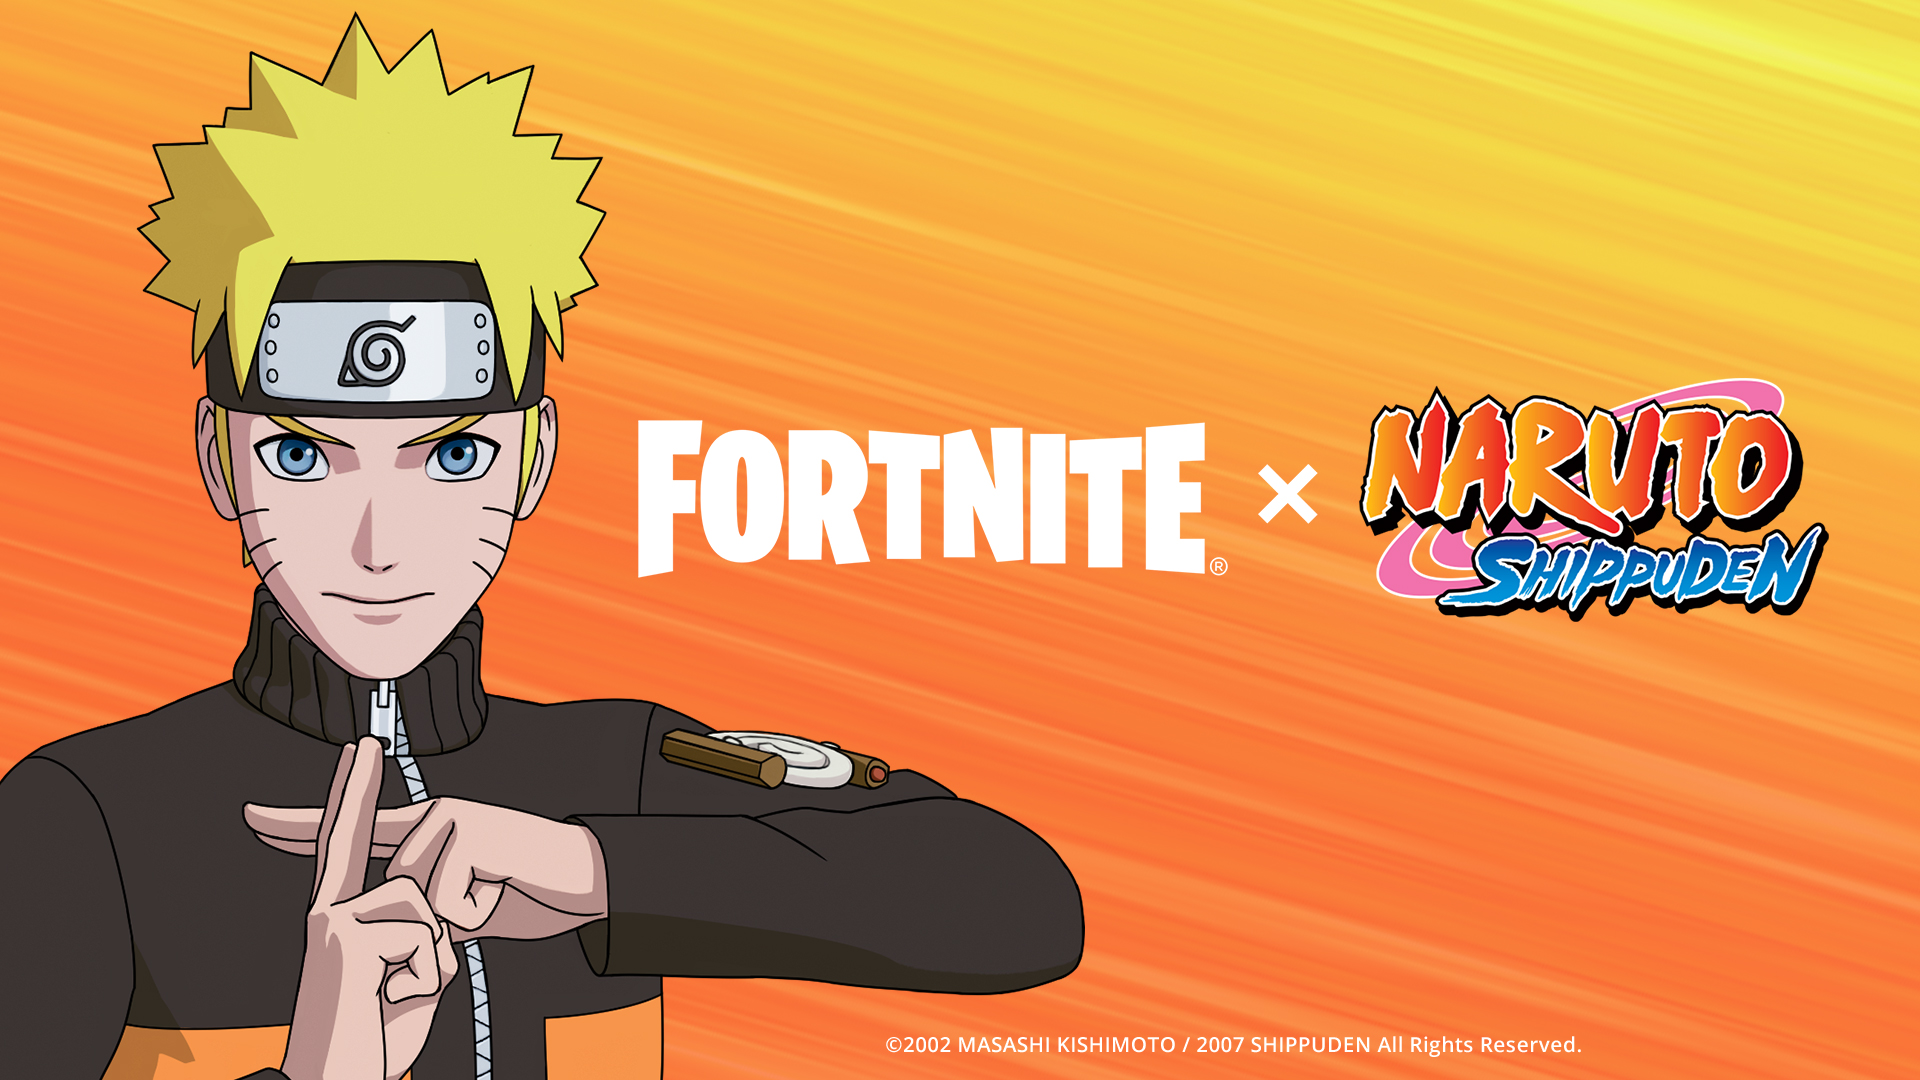 Kết hợp giữa Fortnite và Naruto Uzumaki sẽ mang đến một sự kết hợp tuyệt vời giữa hai thế giới đầy giải trí. Với Fortnite cung cấp một trong những nền tảng trò chơi ấn tượng nhất hiện nay còn Naruto Uzumaki hấp dẫn với những tính năng chiến đấu, tạo hình độc đáo và truyền tải thông điệp tuyệt vời về tình bạn và tình đồng đội.